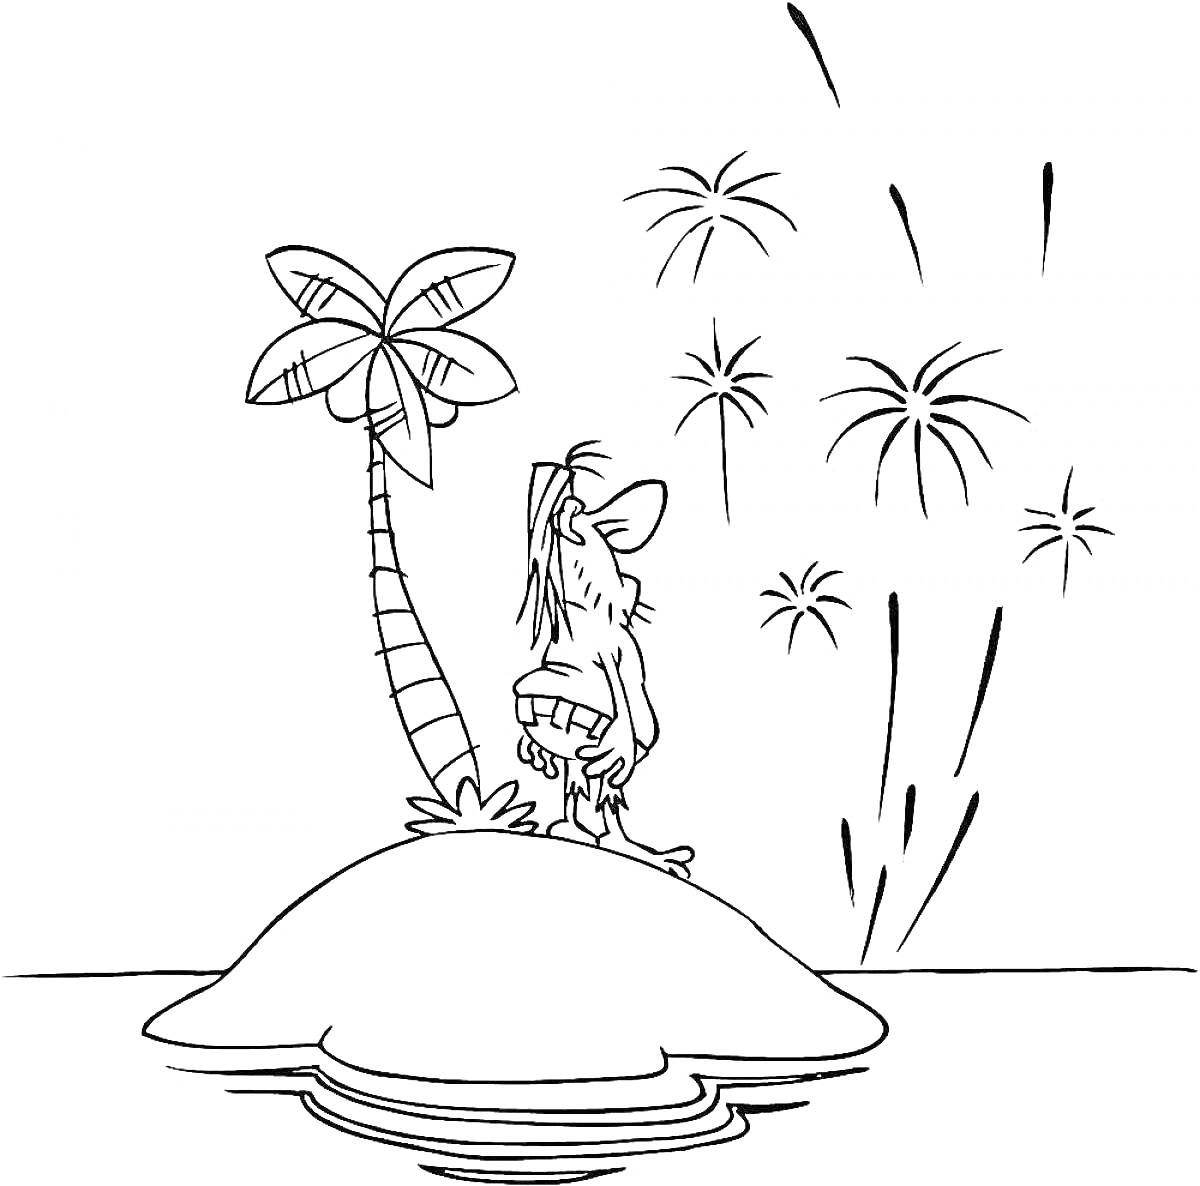 Раскраска Пират на острове с пальмой, наблюдающий фейерверк над водой